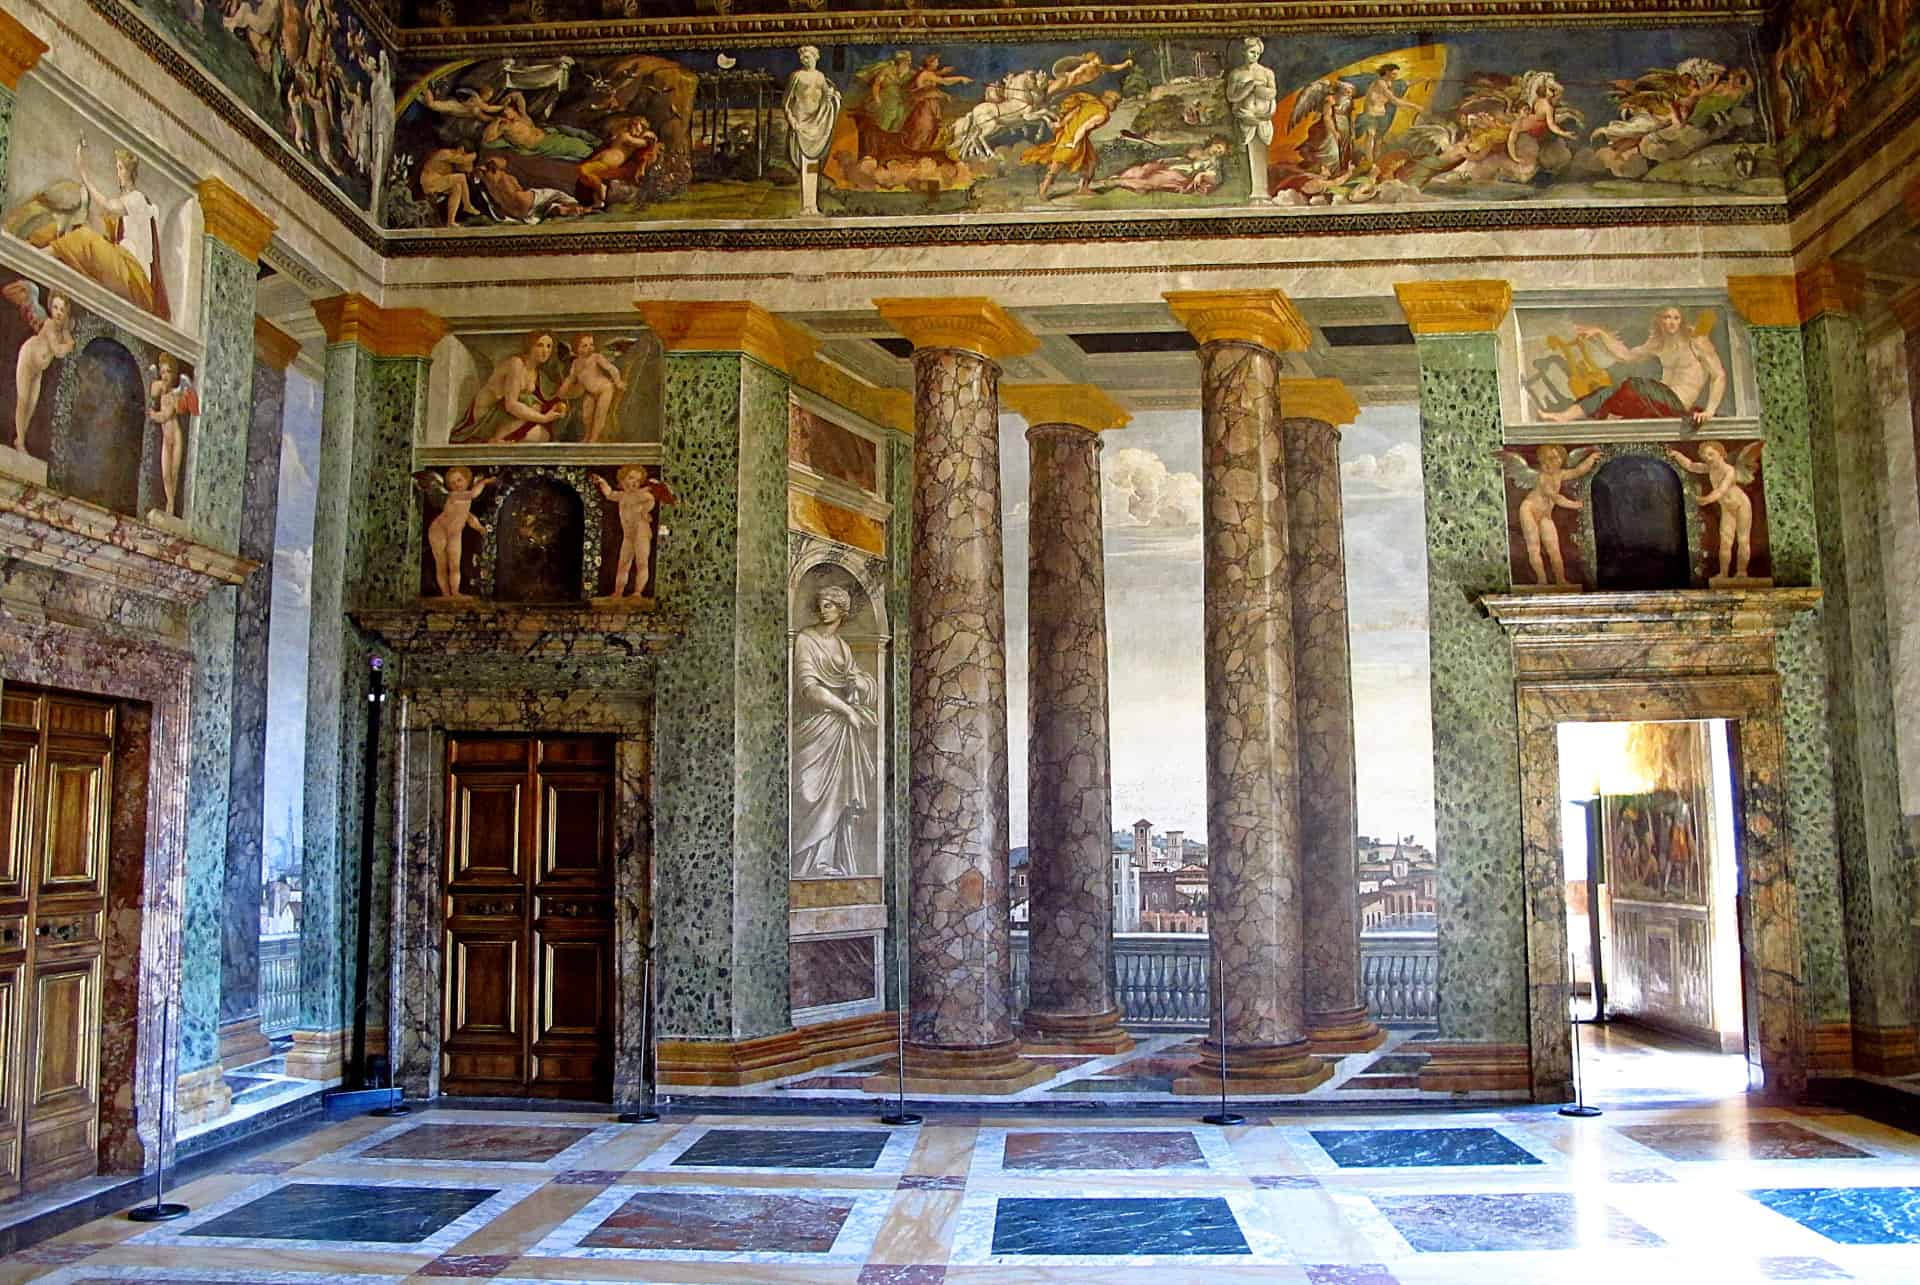 Villa Farnesina interieur trastevere